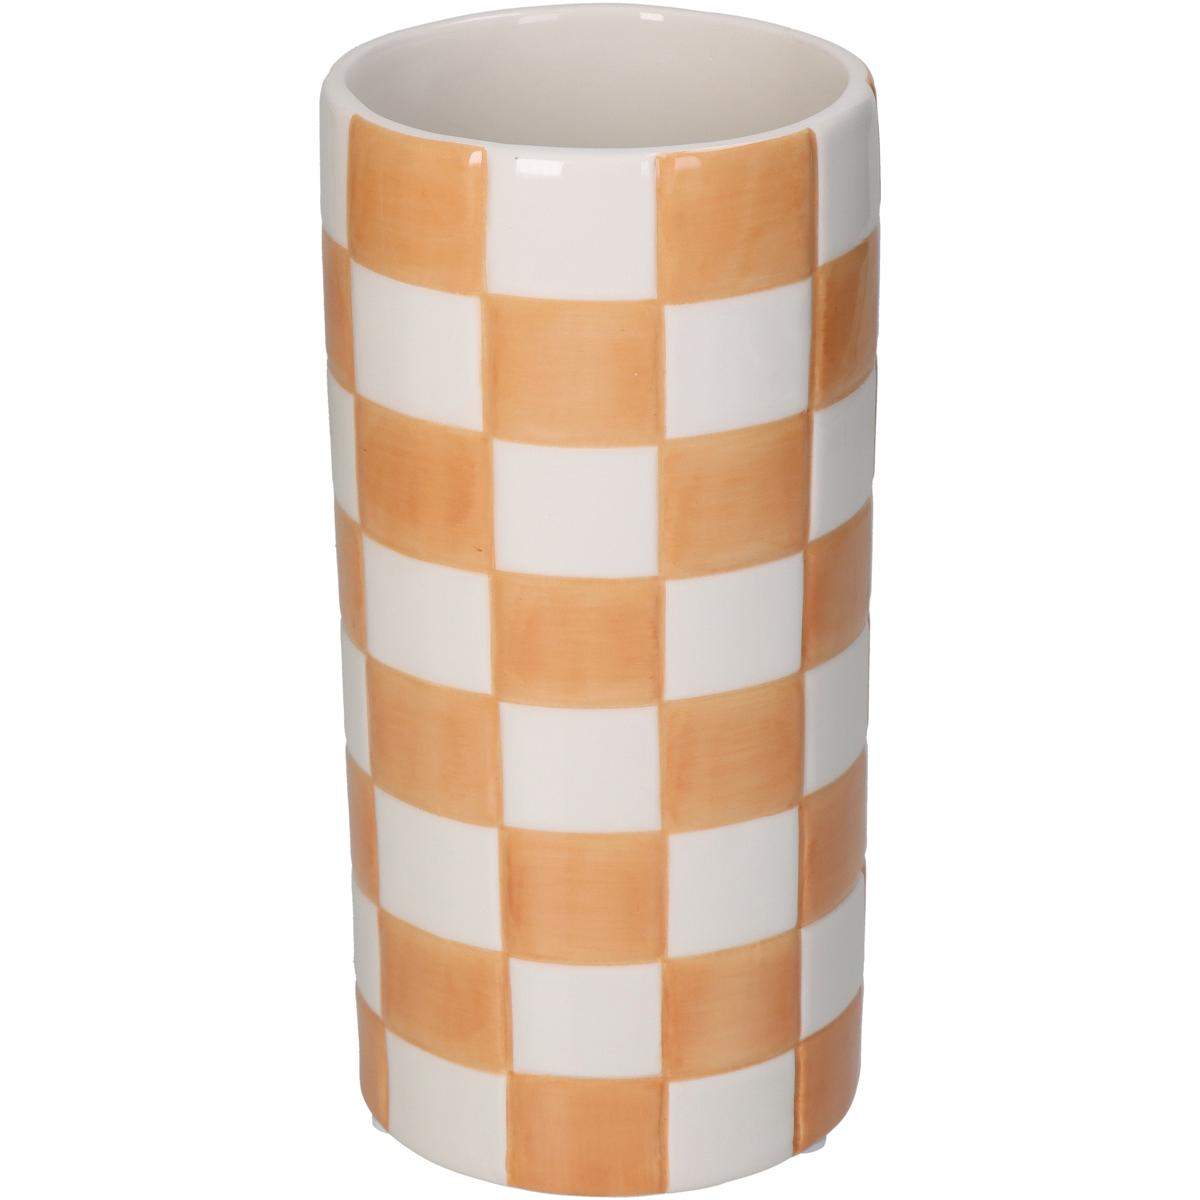 Βάζο Δολομίτης Σκακιέρα Λιλά ARTE LIBRE 10,2x10,2x20,3εκ. 05150173 (Χρώμα: Πορτοκαλί, Υλικό: Δολομίτης) - ARTELIBRE - 05150173